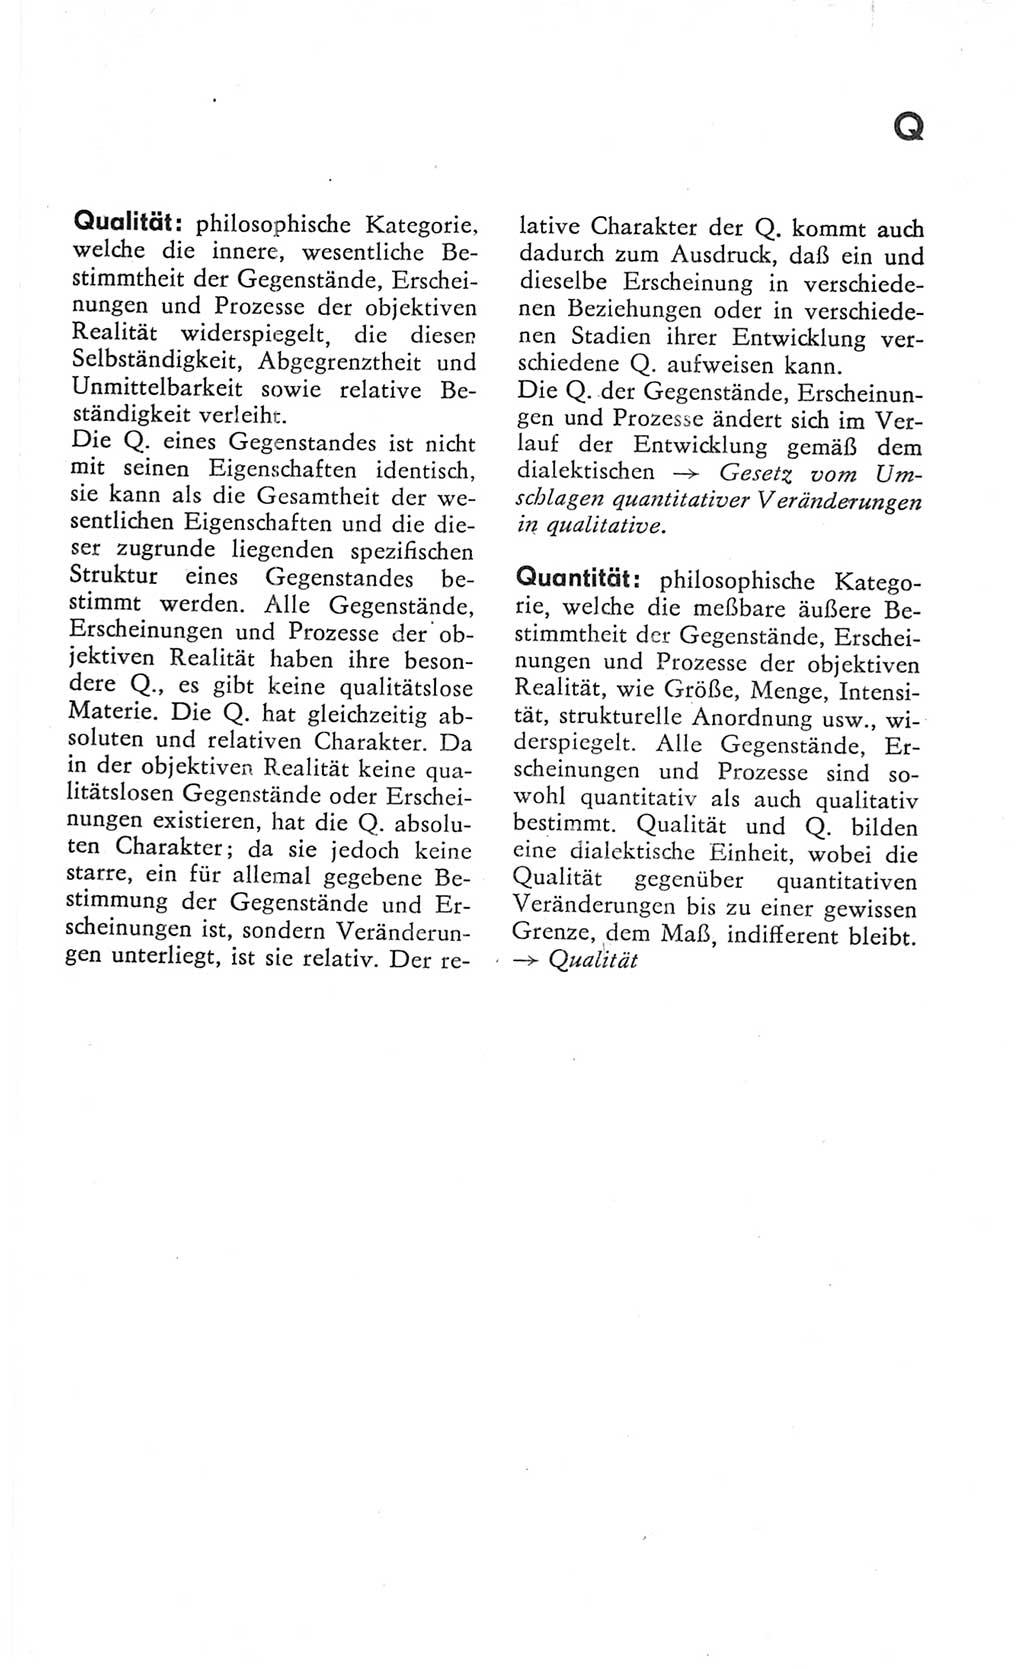 Kleines Wörterbuch der marxistisch-leninistischen Philosophie [Deutsche Demokratische Republik (DDR)] 1982, Seite 273 (Kl. Wb. ML Phil. DDR 1982, S. 273)